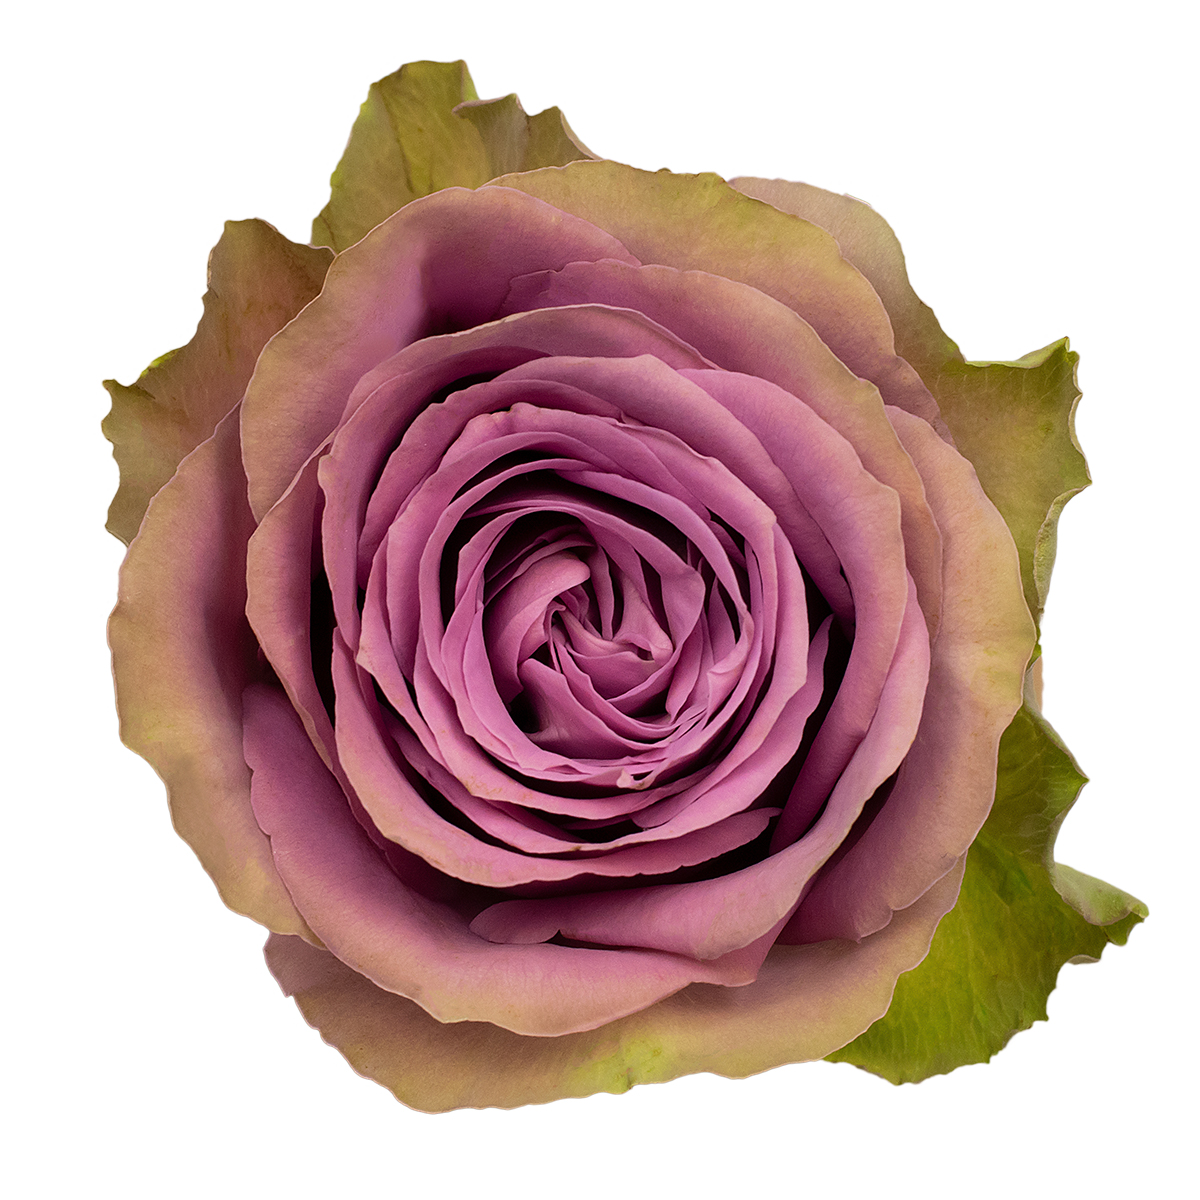 TIARA rose - Florist Rose Paradise! - Decofresh TOTF2020 on Thursd